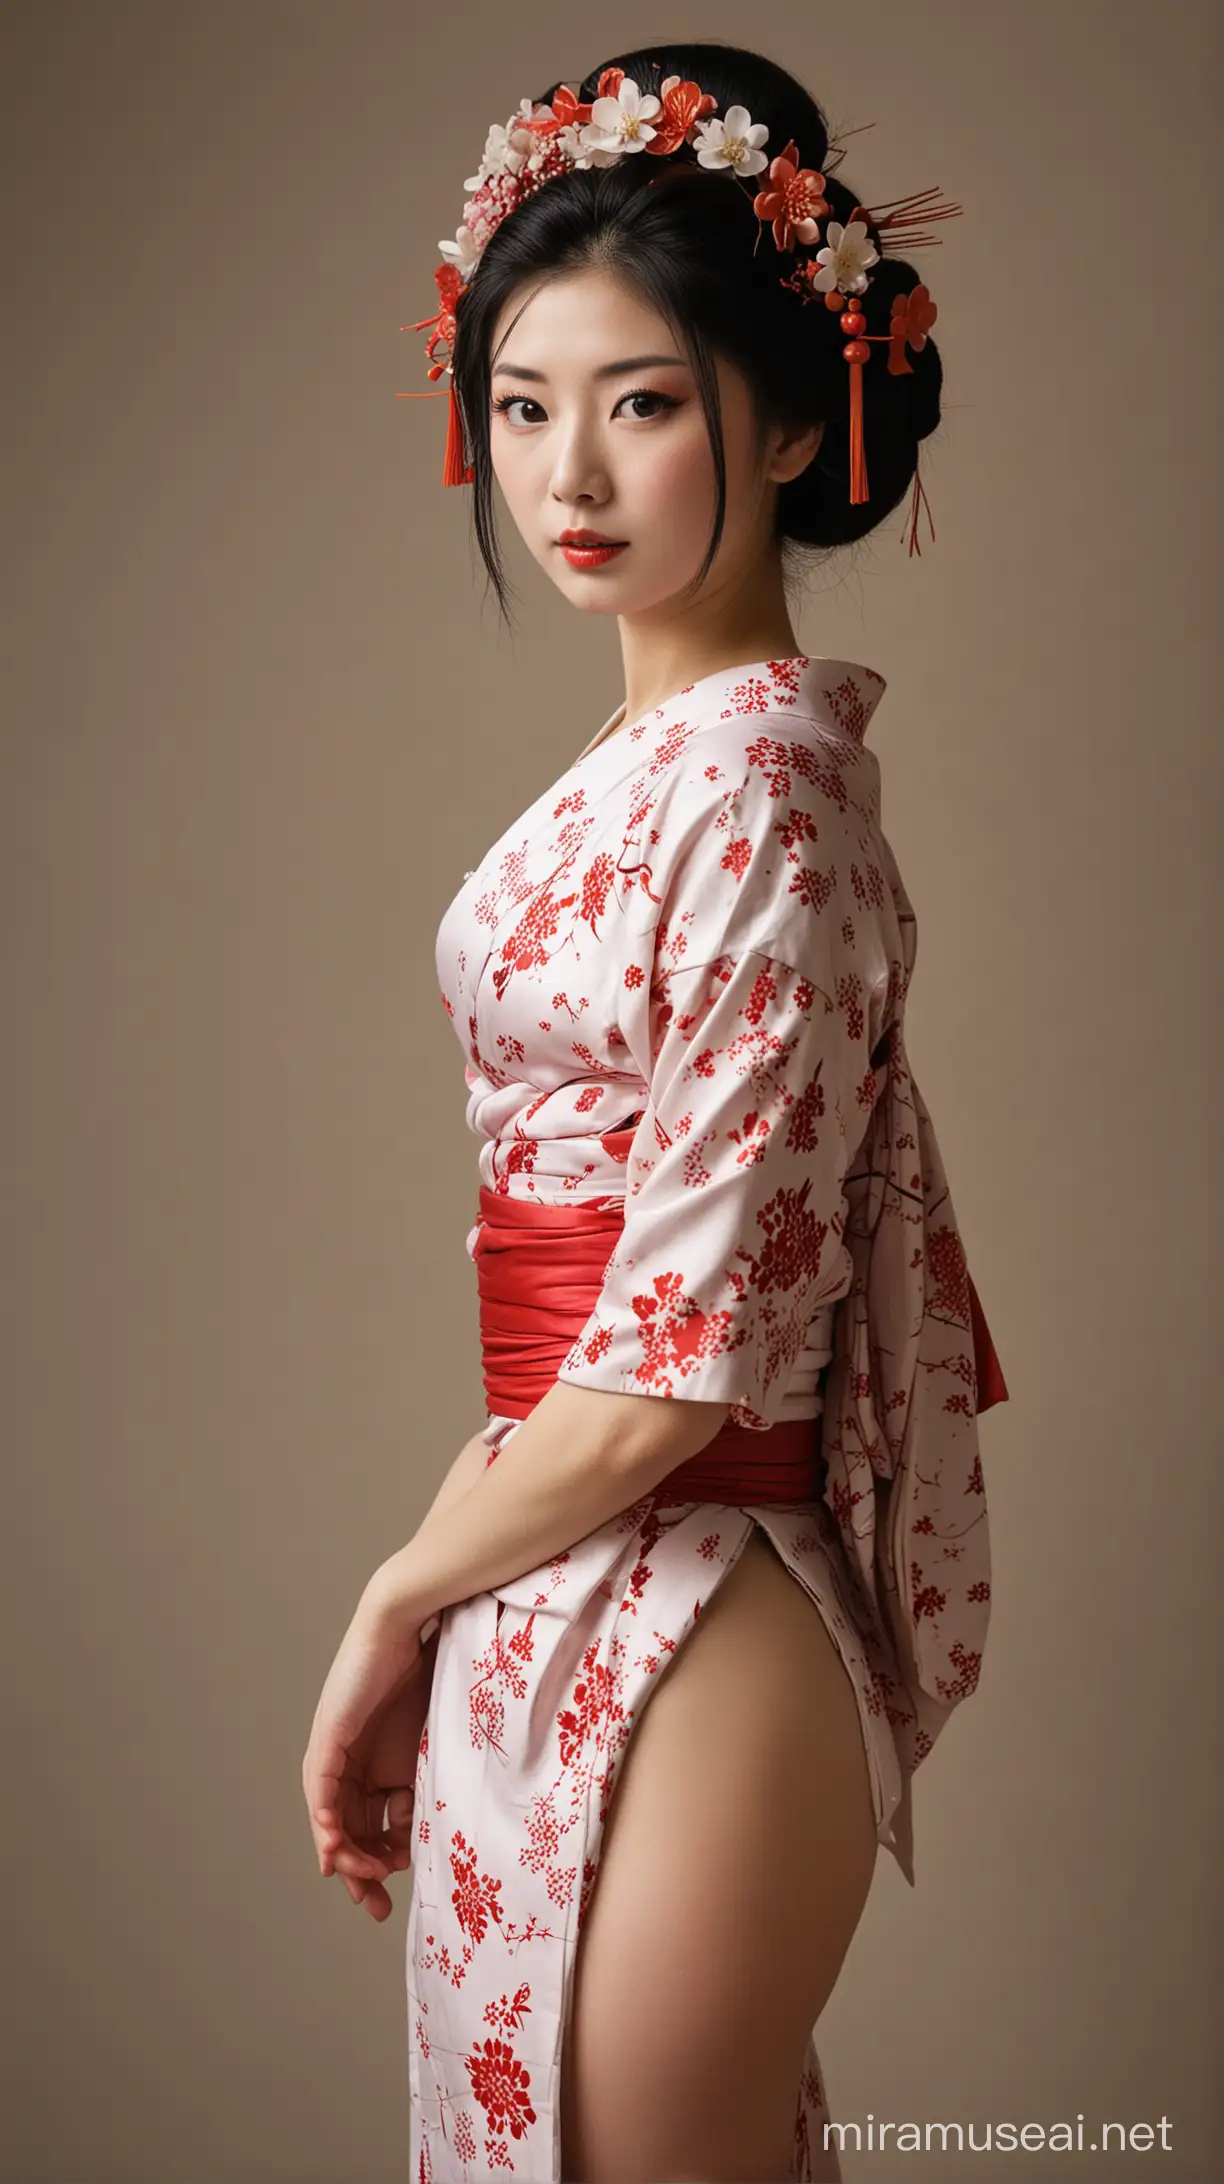 Elegant Geisha in Traditional Attire with a Modern Twist